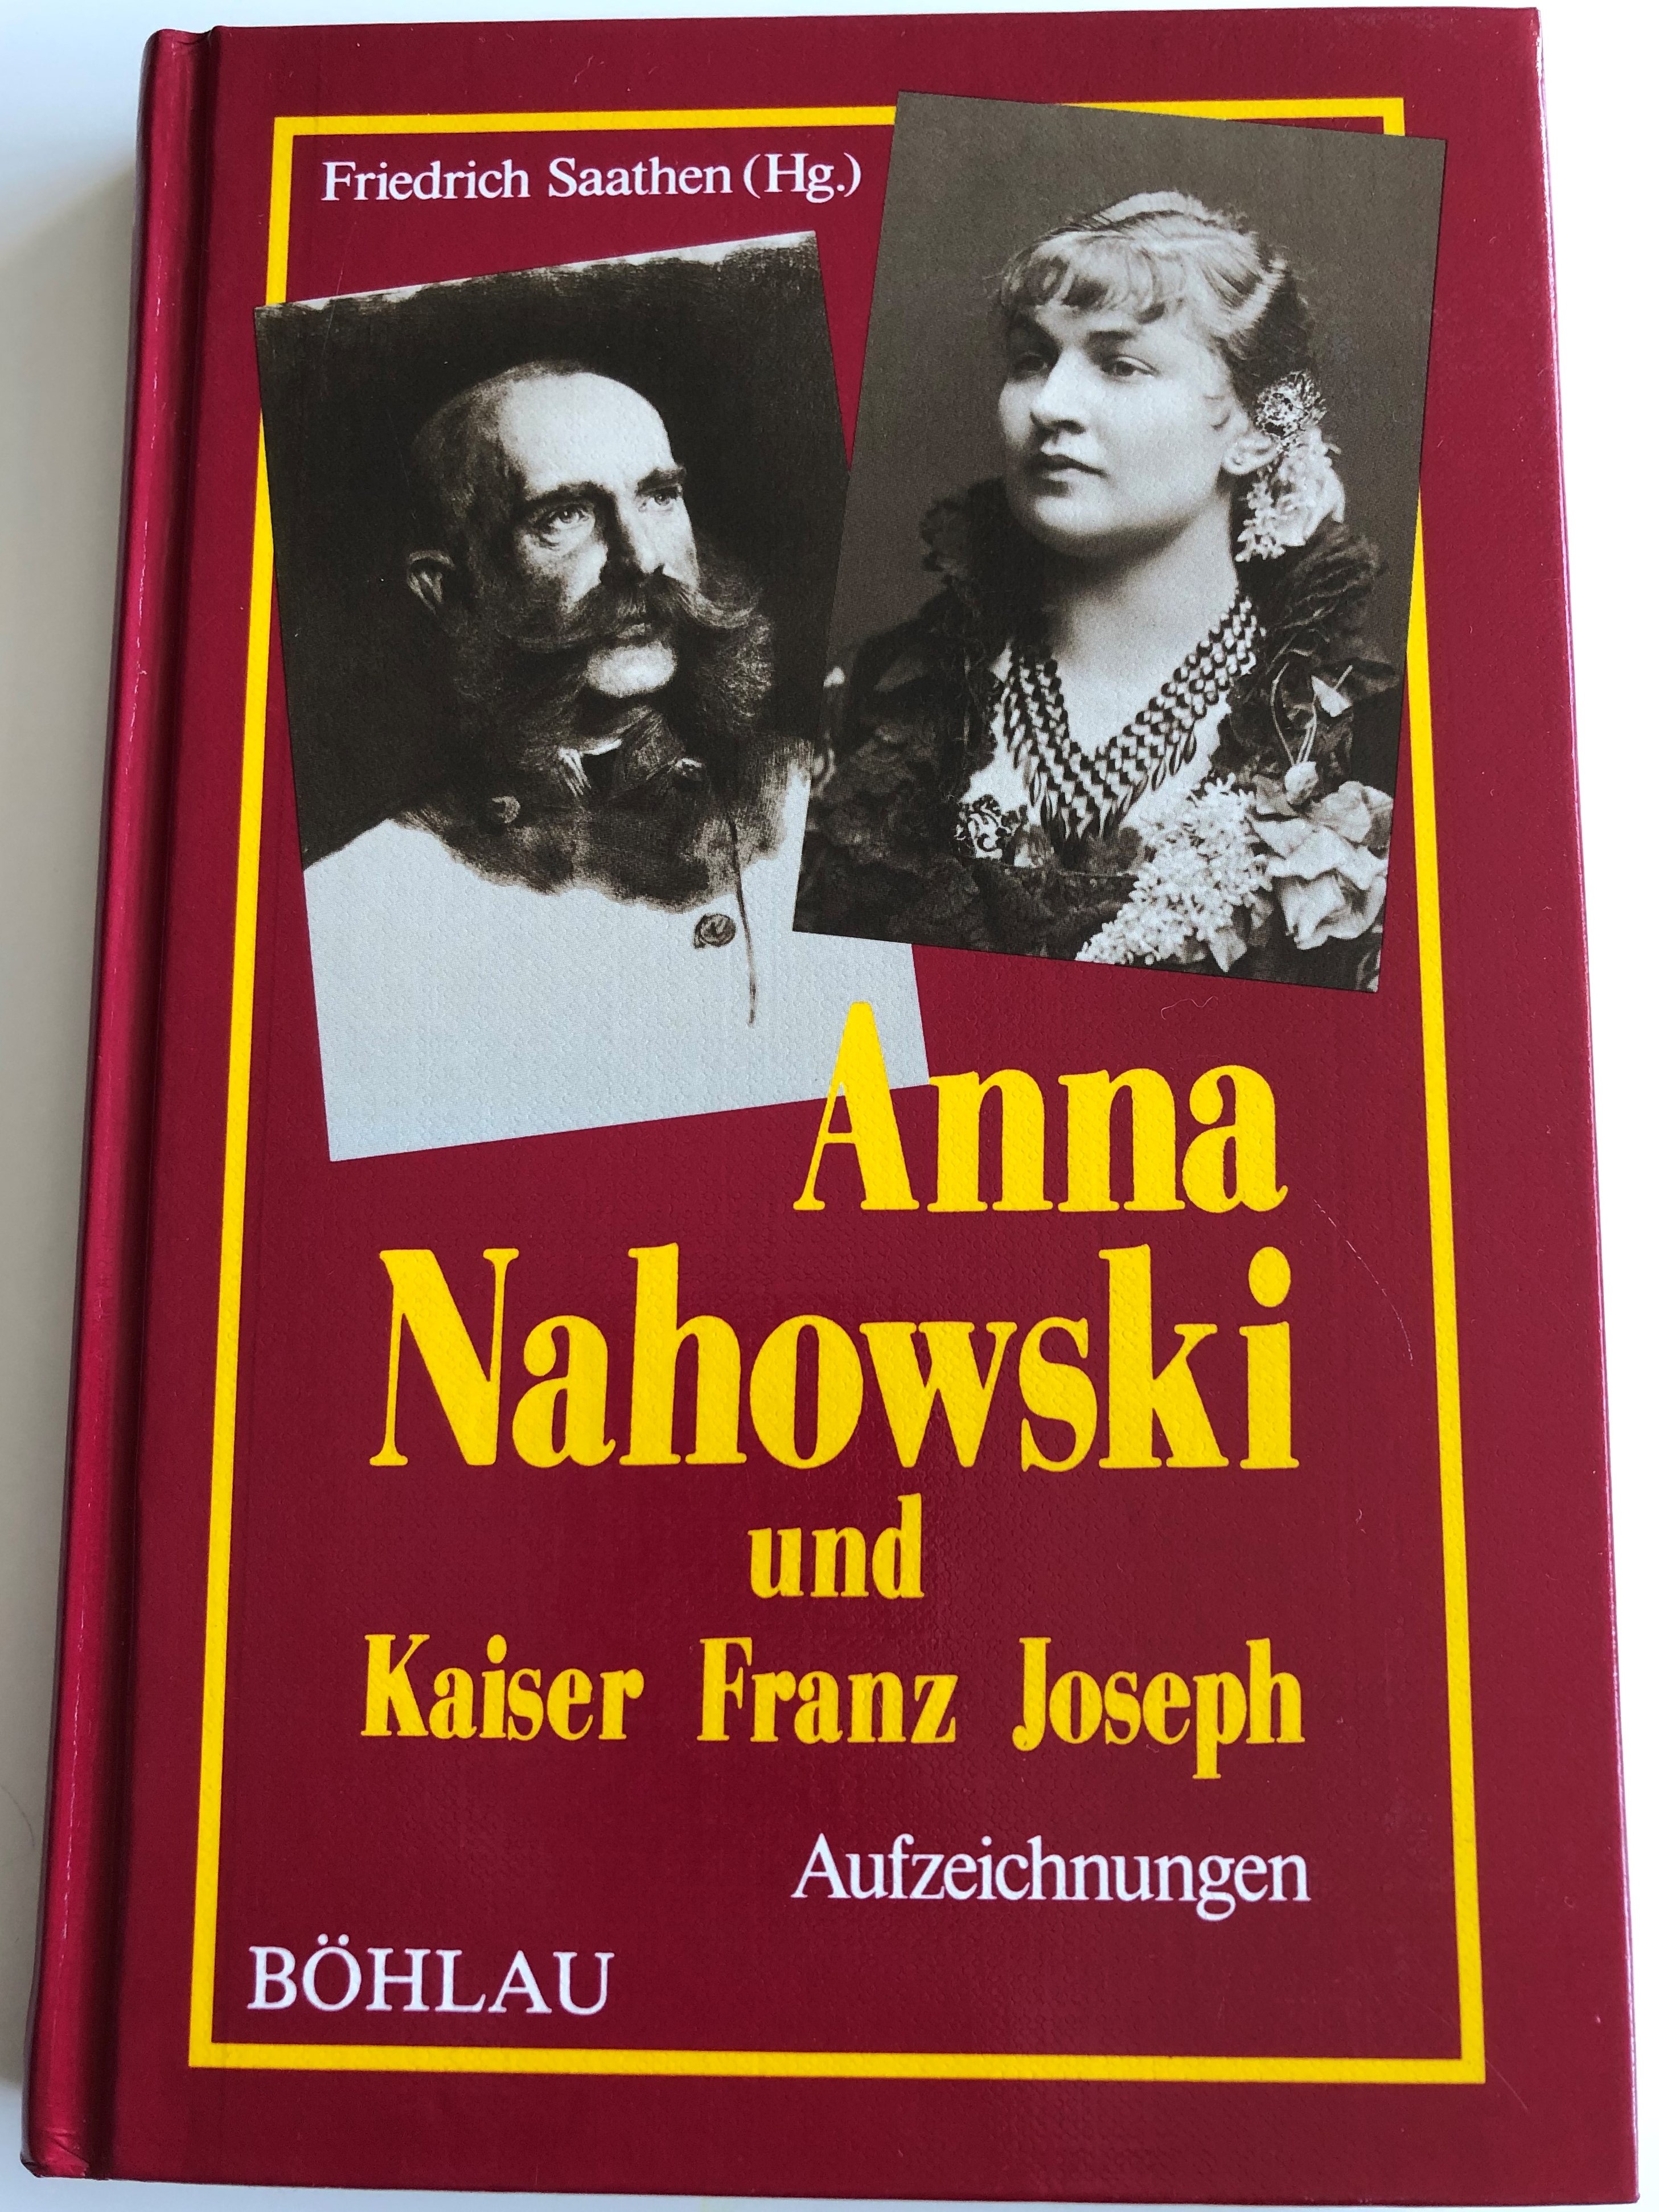 anna-nahowski-und-kaiser-franz-joseph-by-friedrich-saathen-hg.-1.jpg